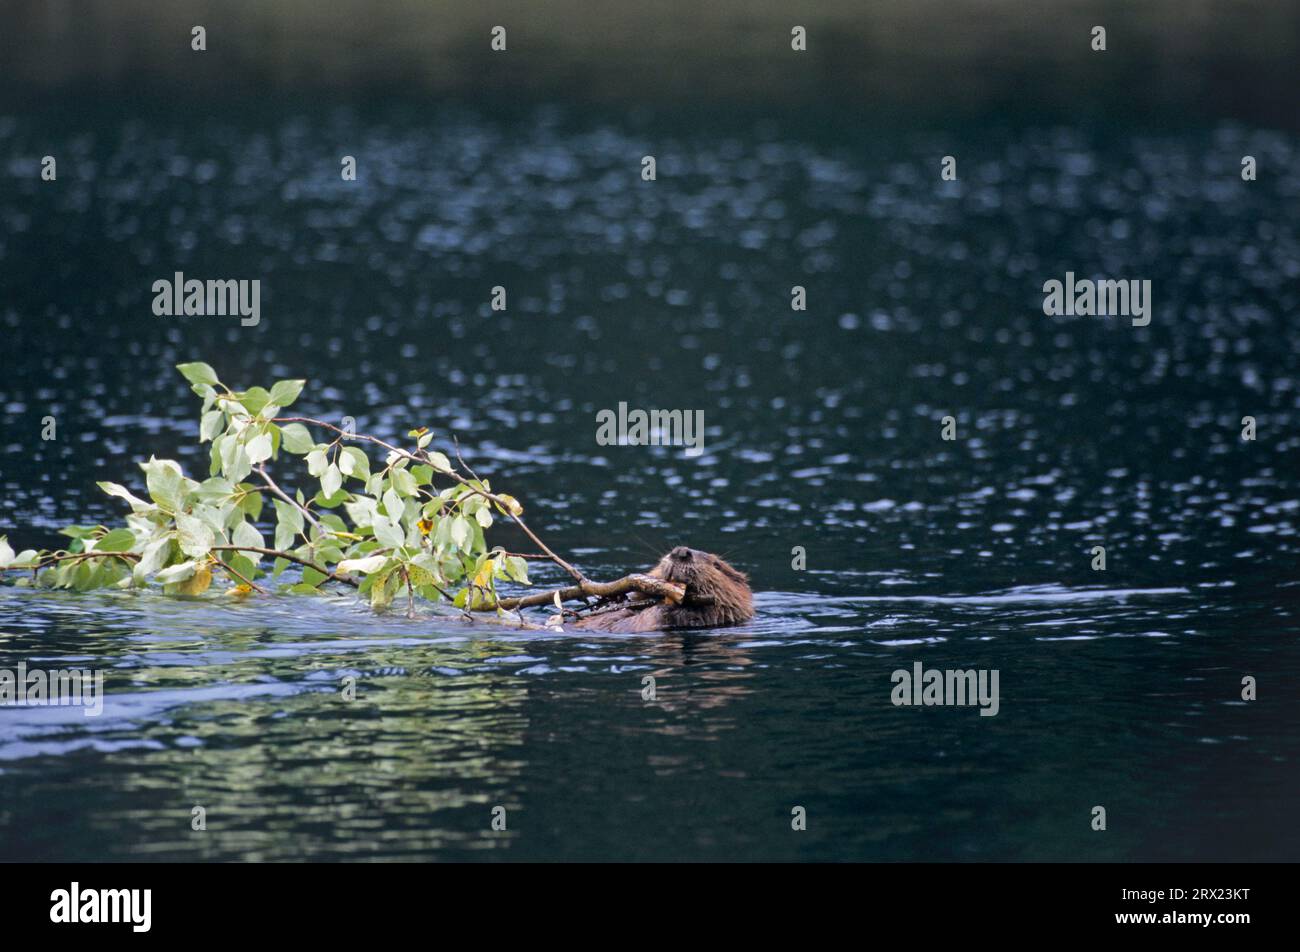 Castoro nordamericano (Castor canadensis) che nuota con rami di salice in uno stagno per fungere da riserva invernale, castoro nordamericano che nuota con Foto Stock